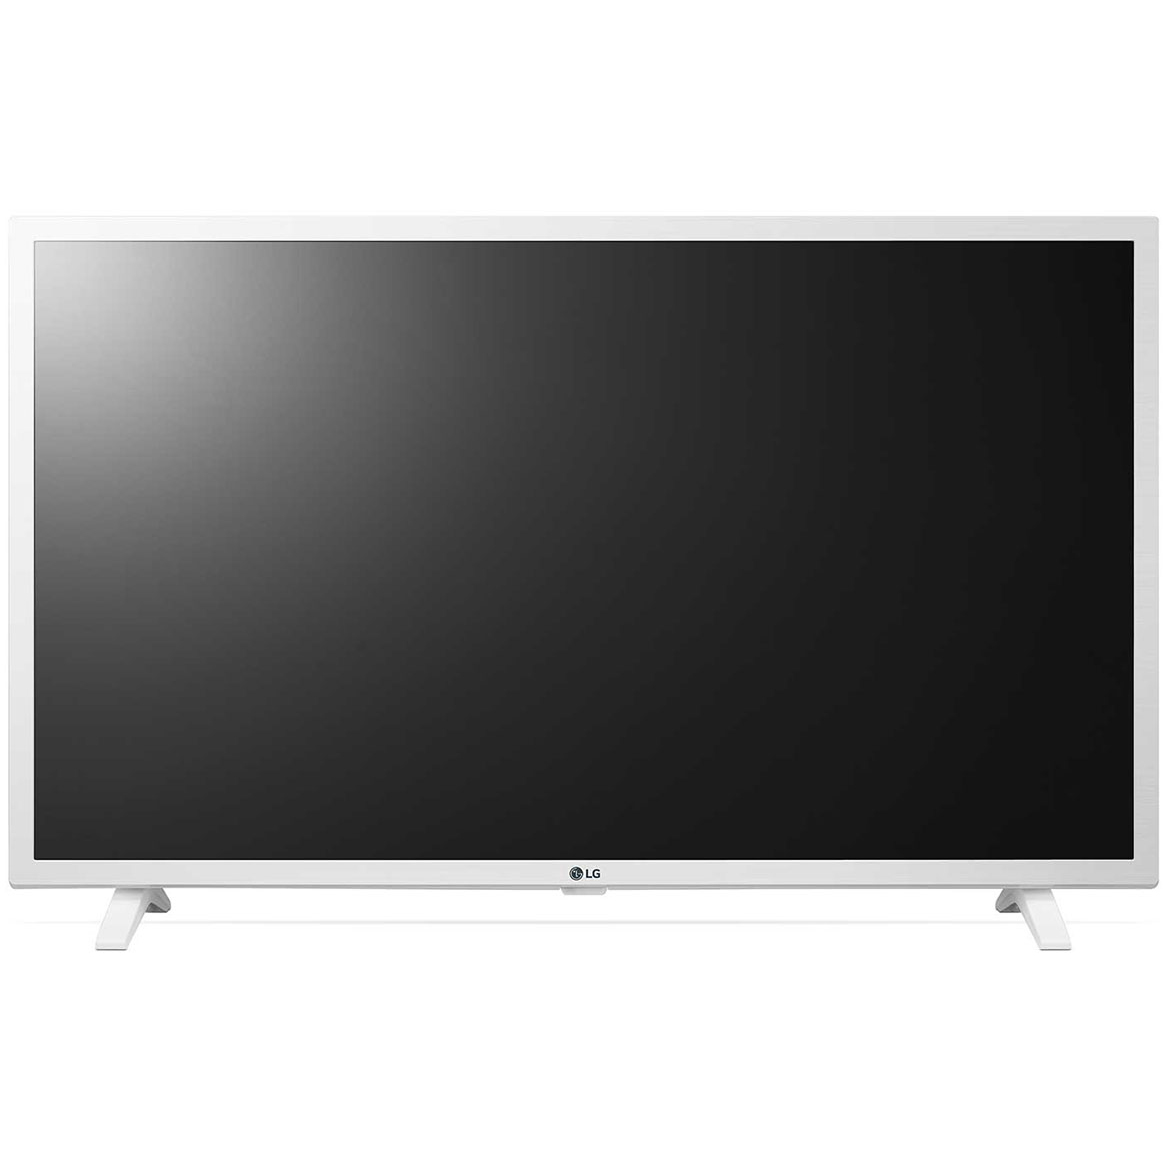 Телевизор LG 32LM6390, цвет белый - фото 3